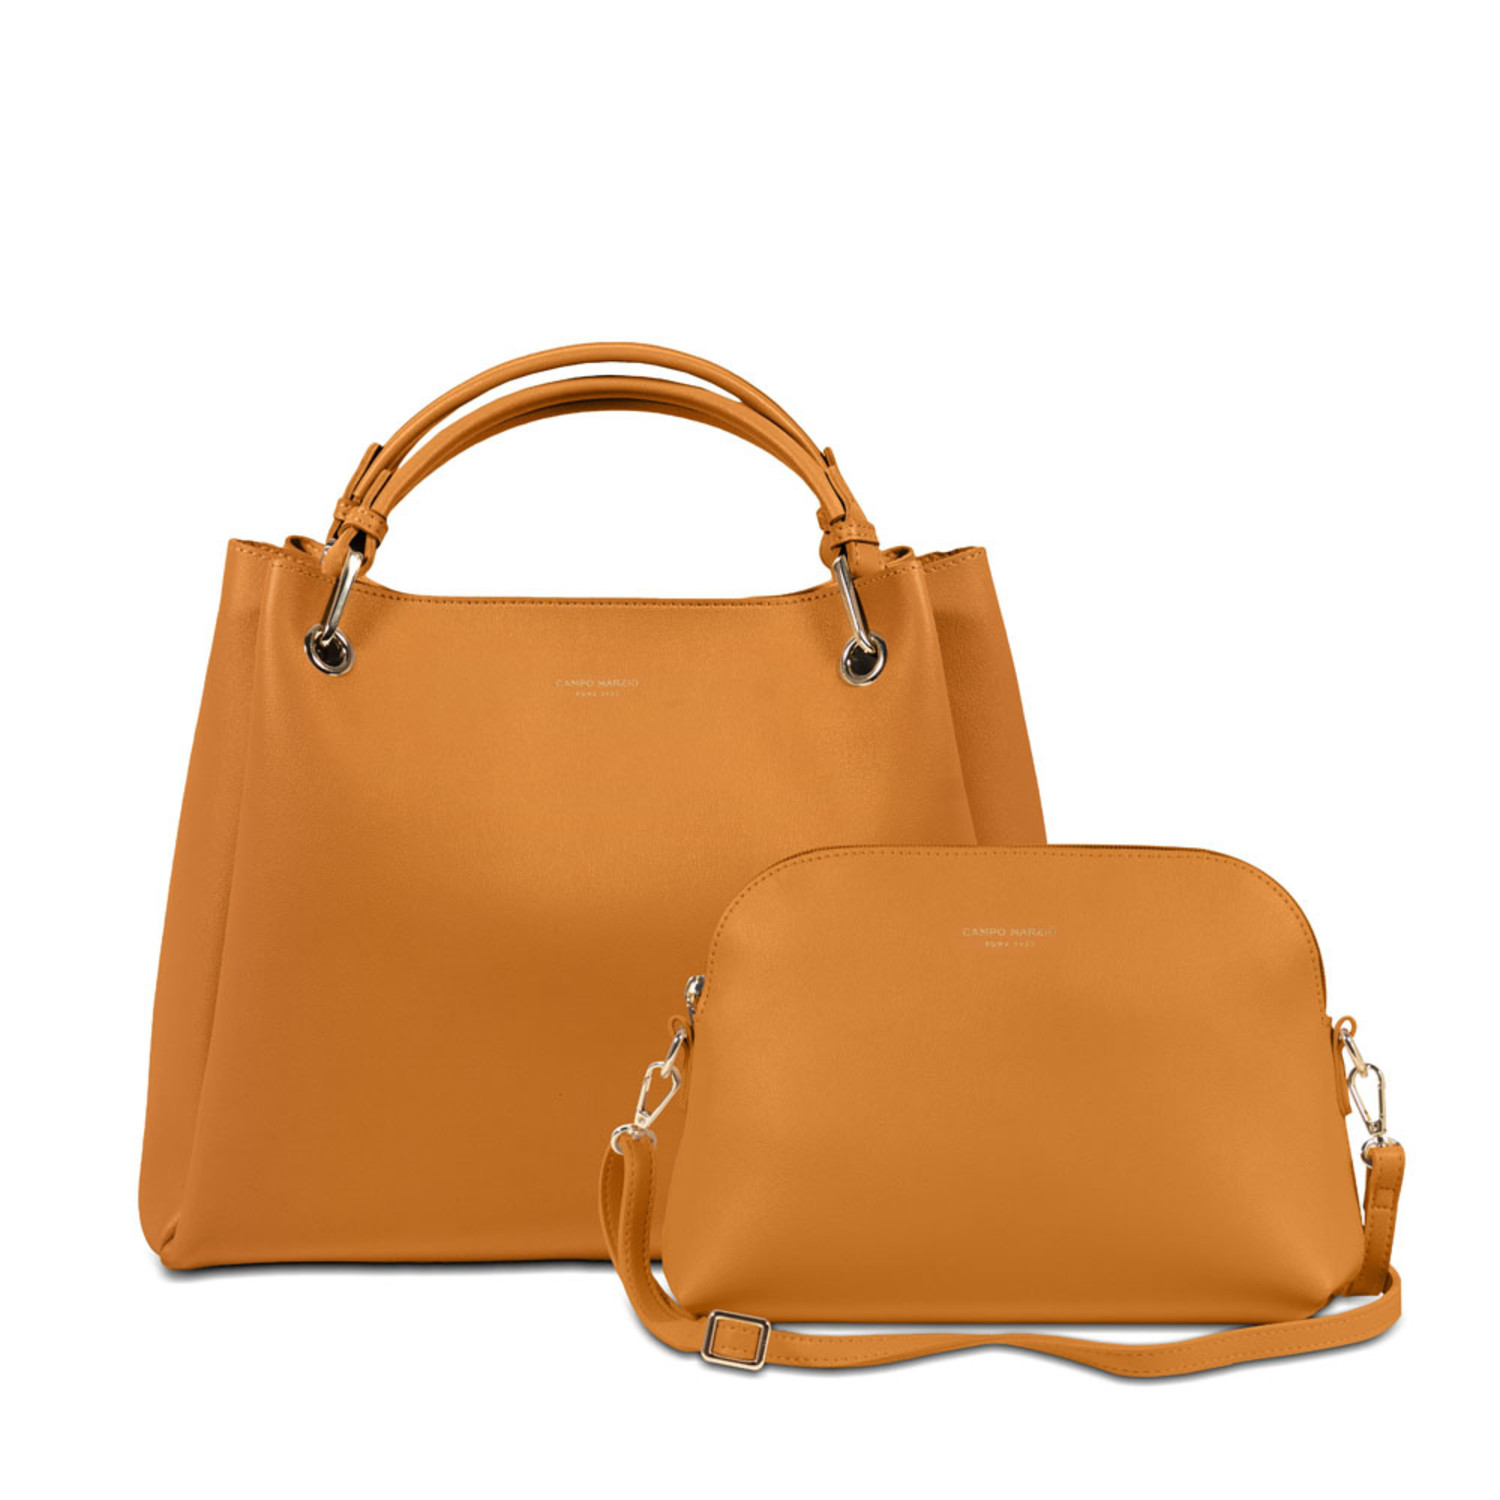 Cordaé New York Luxury Handbag